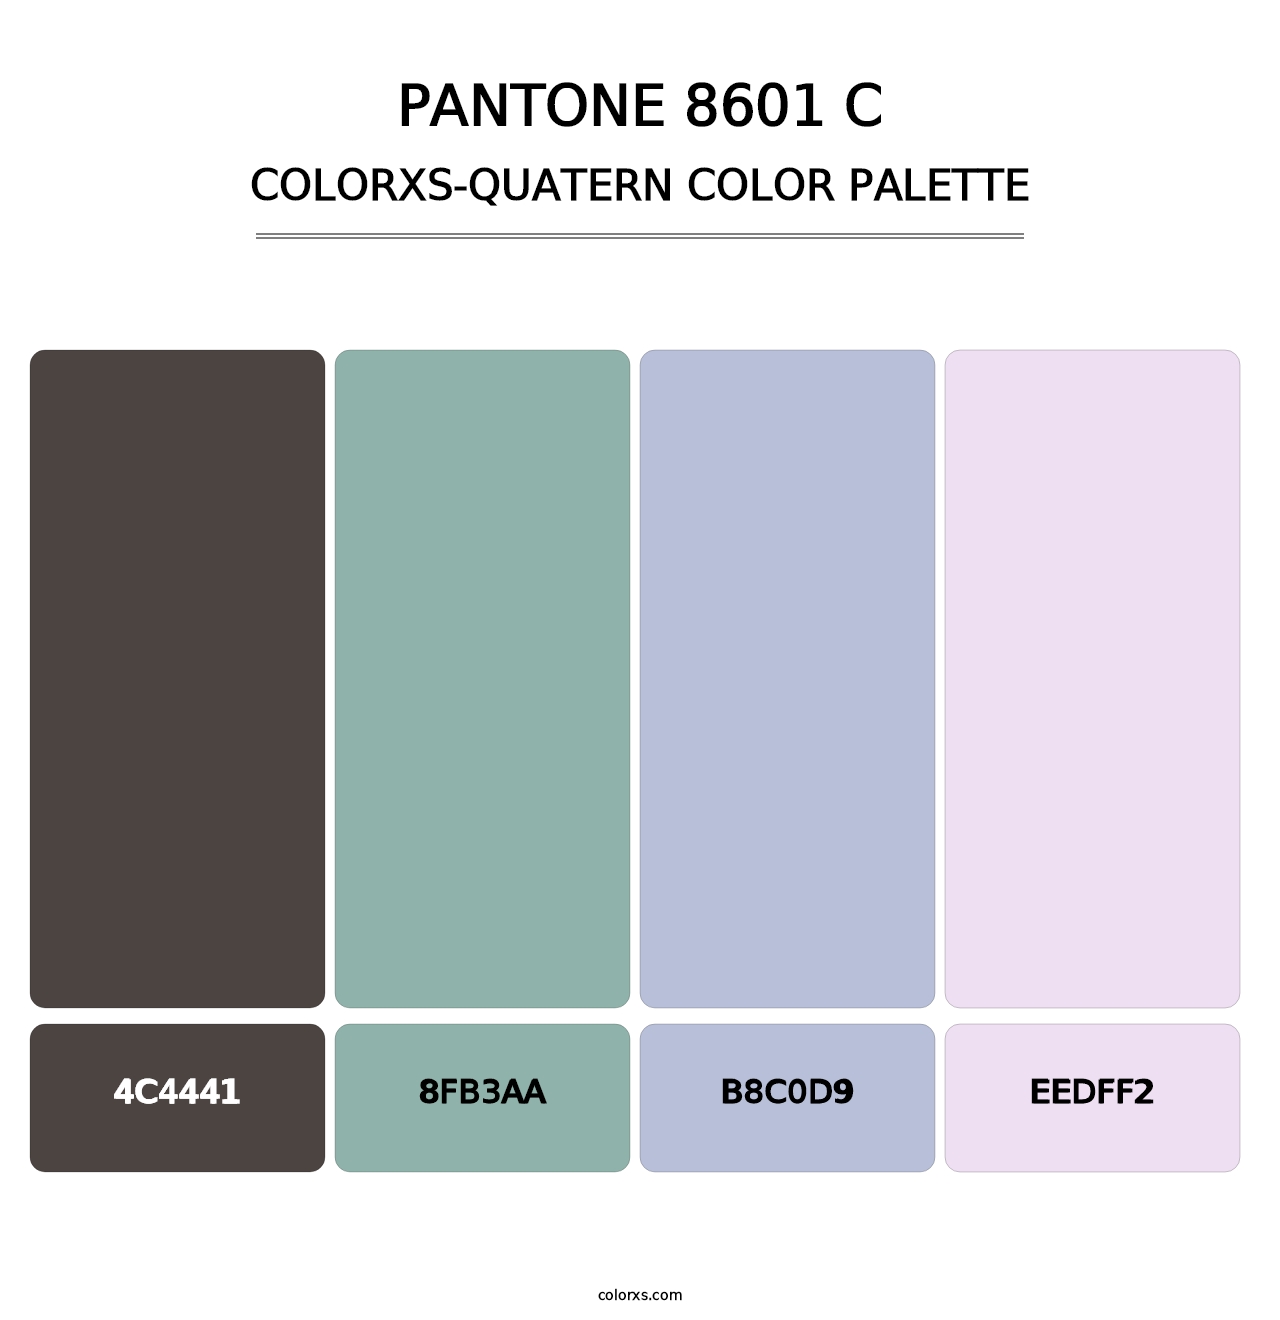 PANTONE 8601 C - Colorxs Quatern Palette